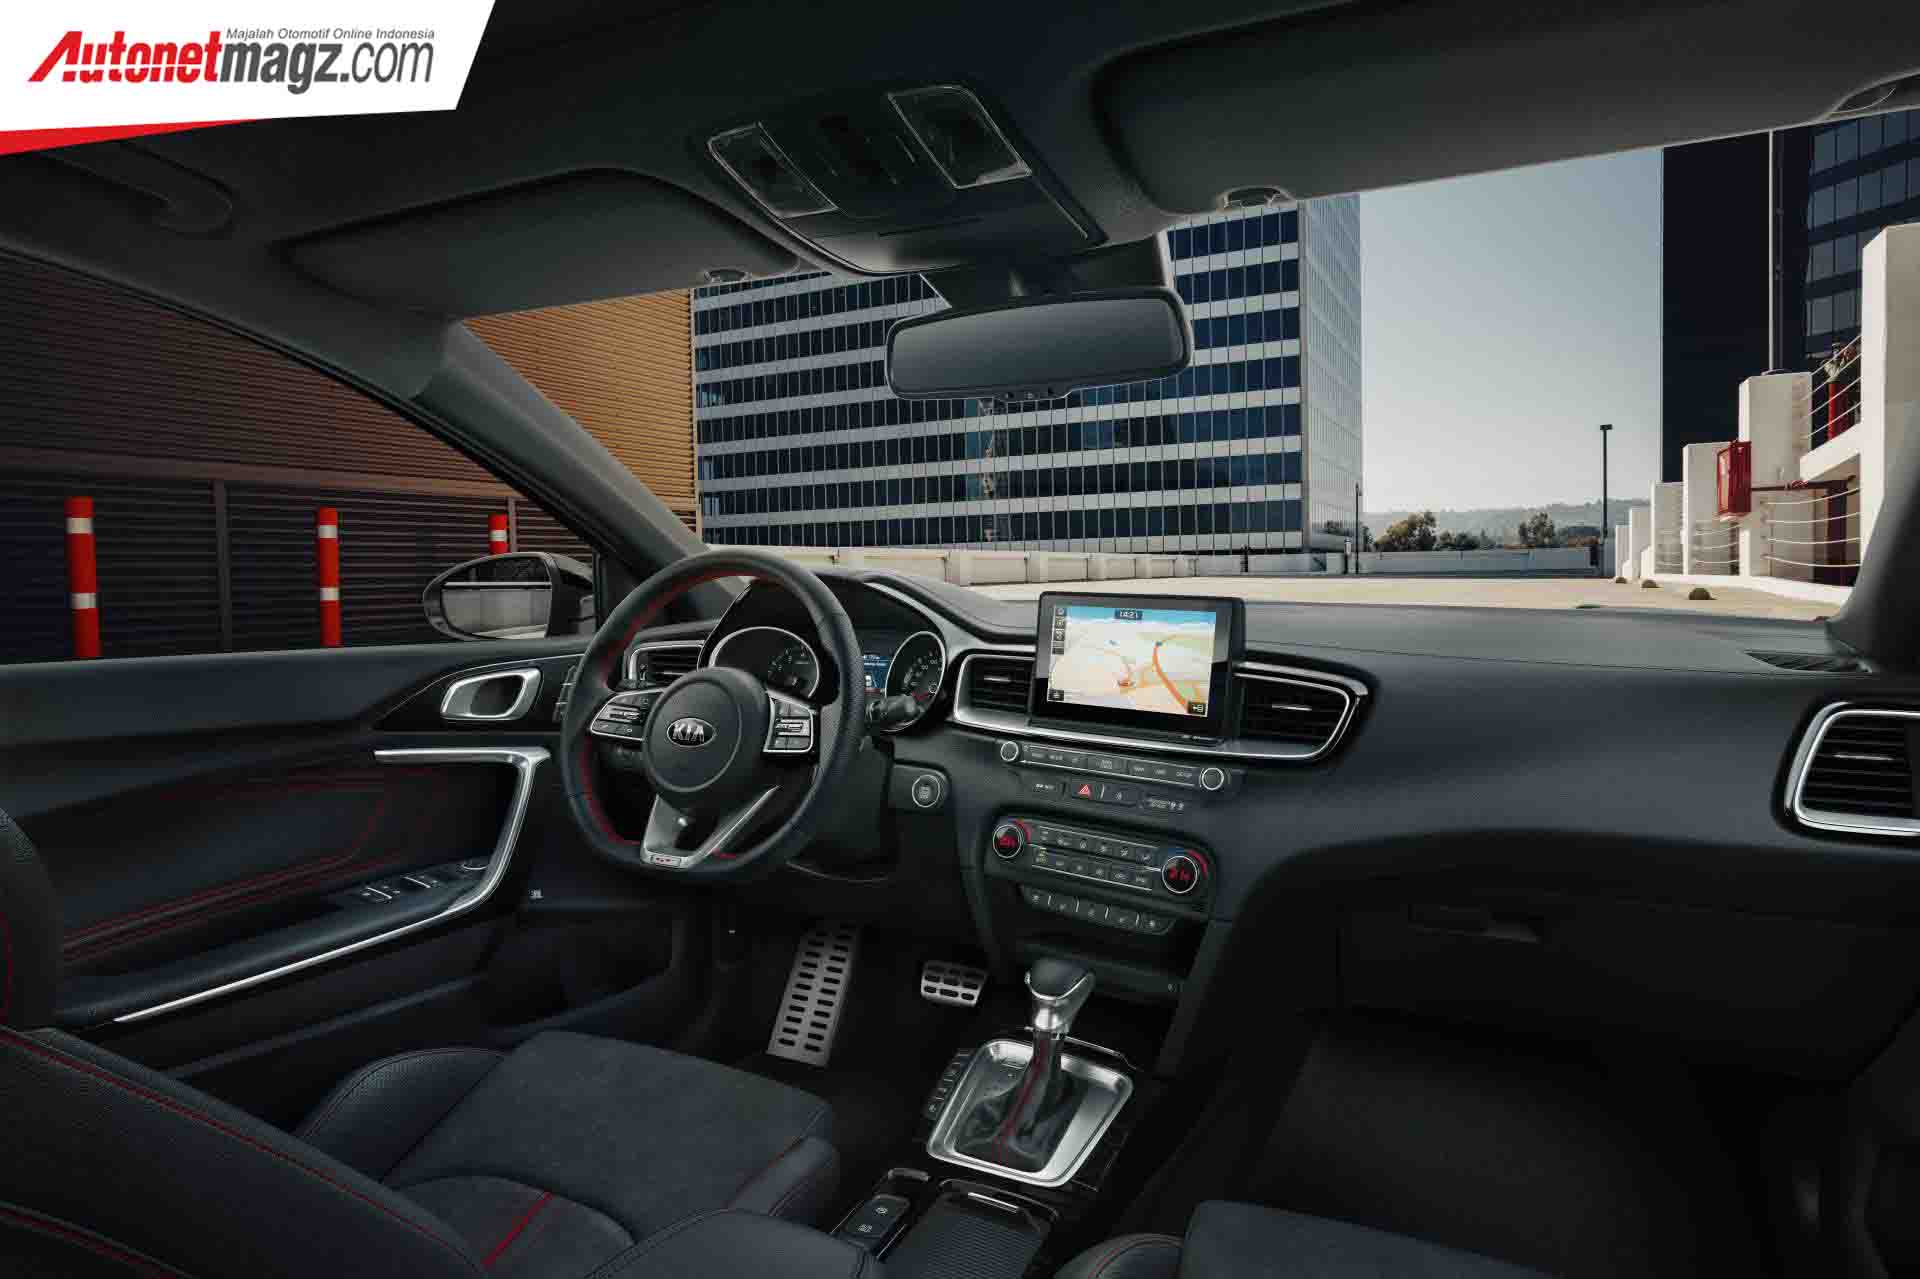 Berita, All-New KIA Ceed GT interior: All-New KIA Ceed GT Diperkenalkan, Pakai Transmisi DCT 7 Percepatan!